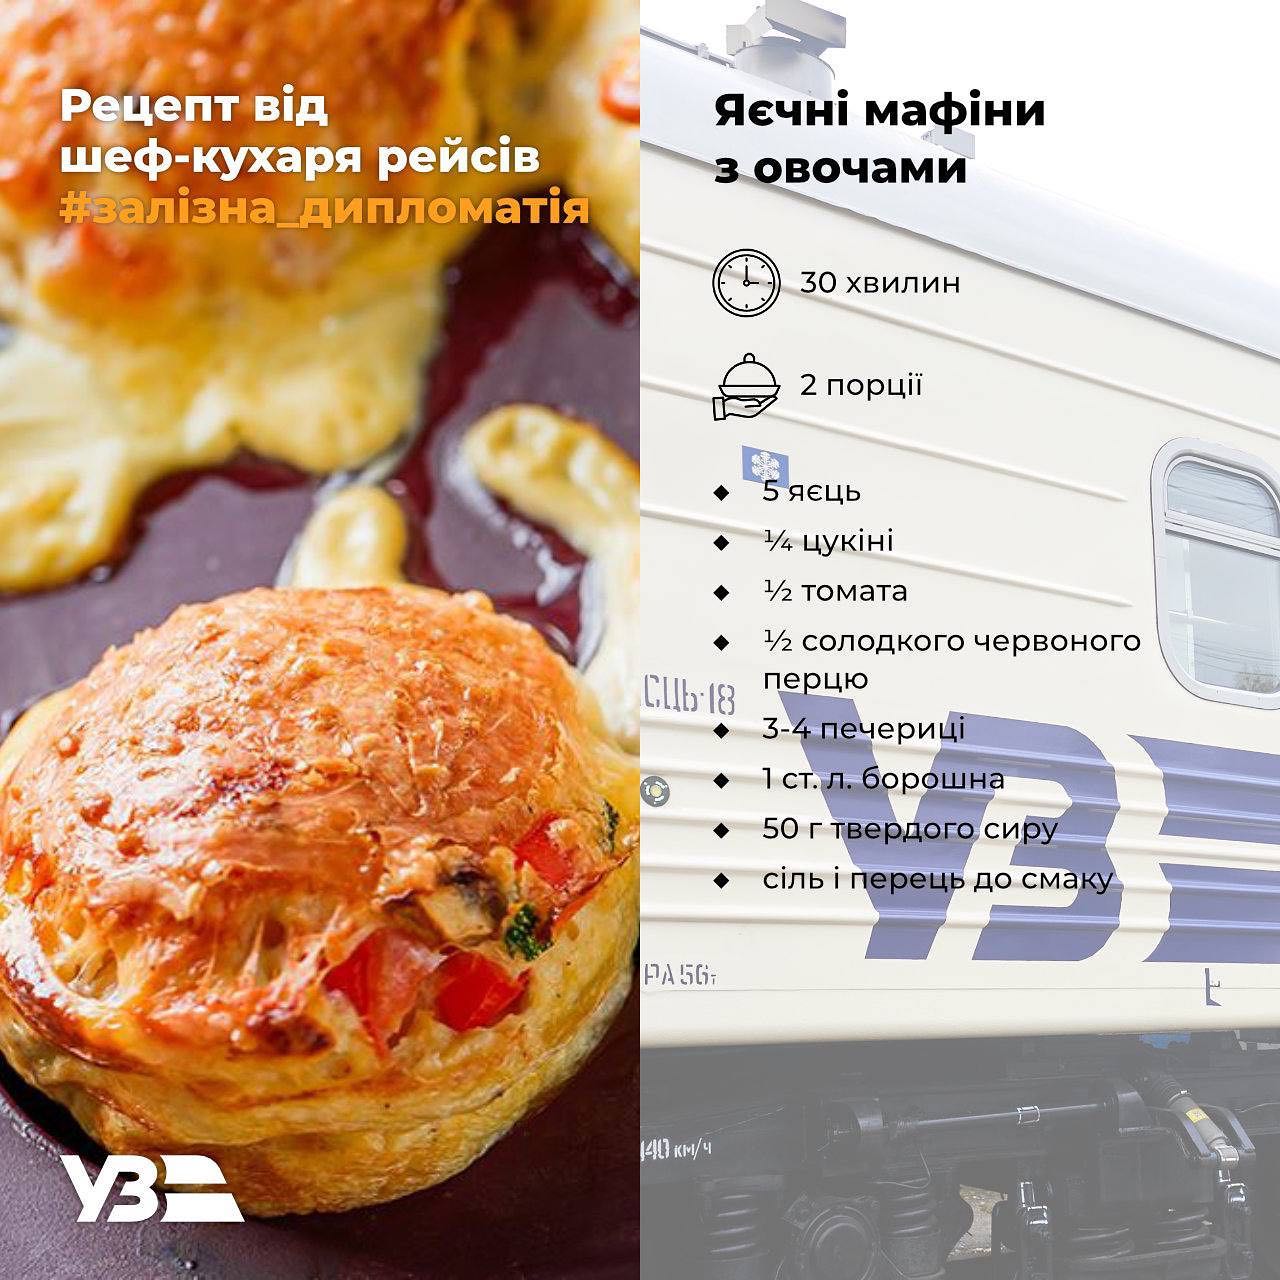 Що з'їсти в поїзді: три простих рецепти перекусів у дорогу від Євгена Клопотенка